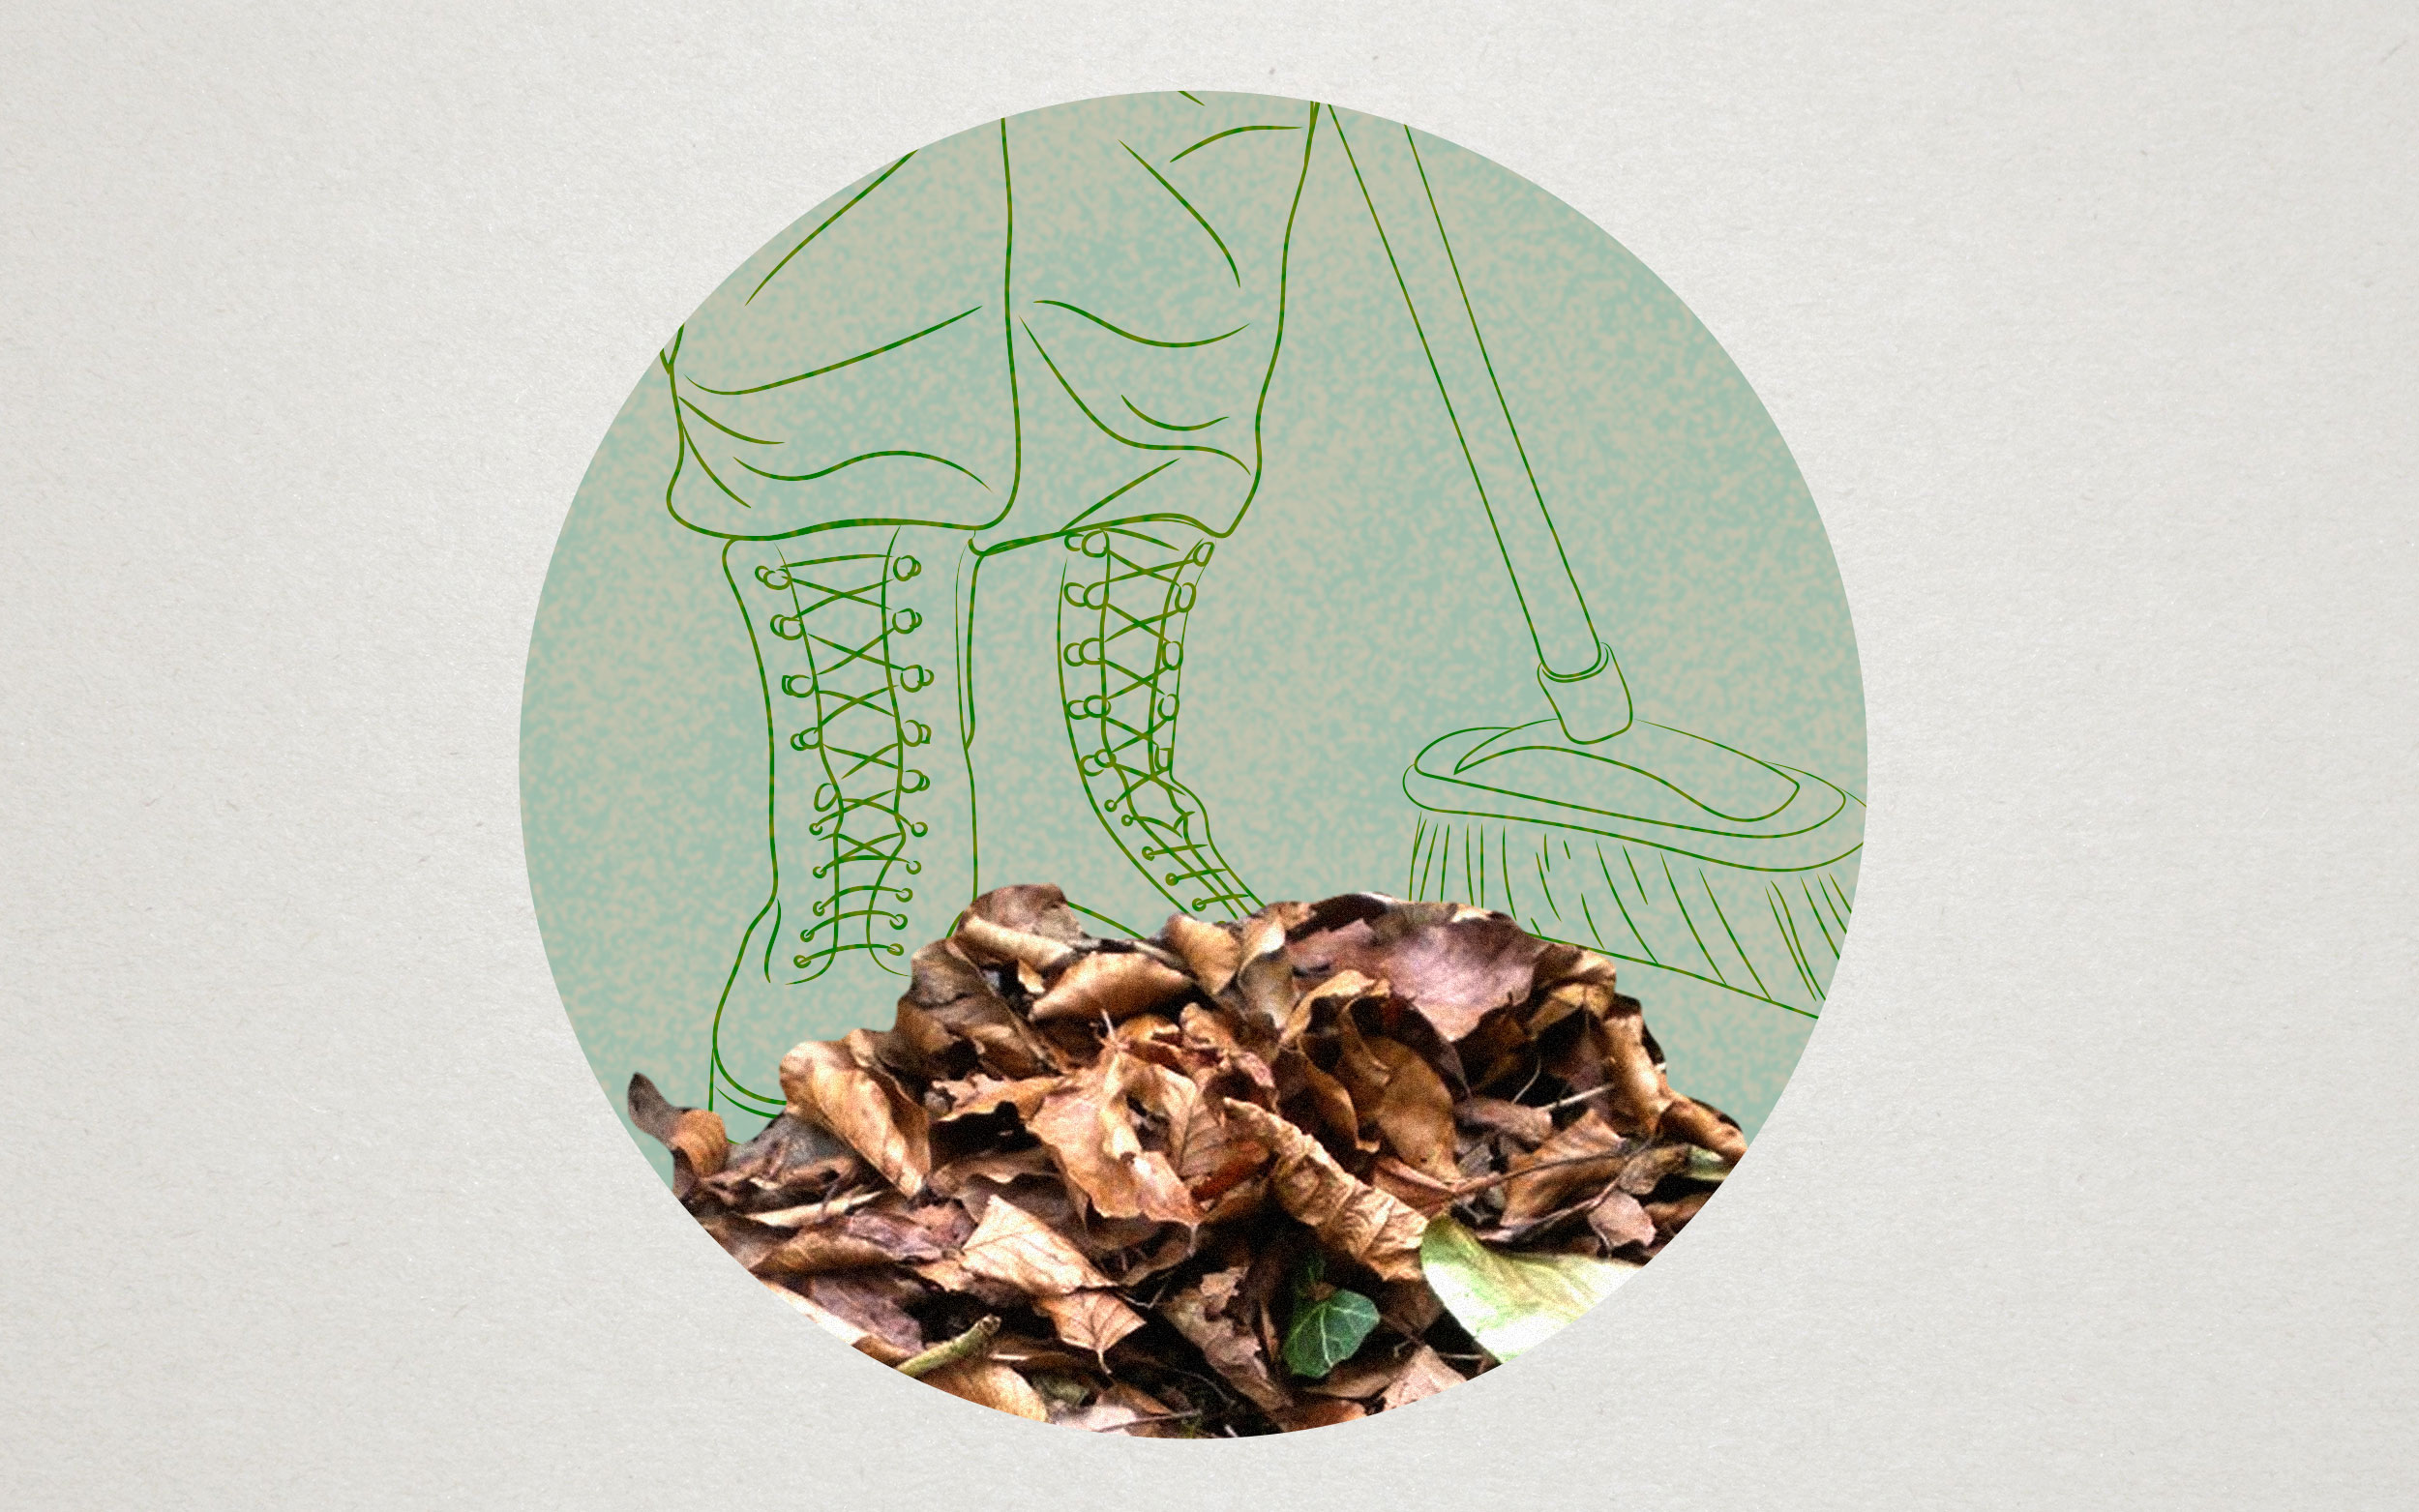 Collage con dibujo en línea de unas botas militares y una escoba, abajo el recorte de una foto de hojas secas apiladas